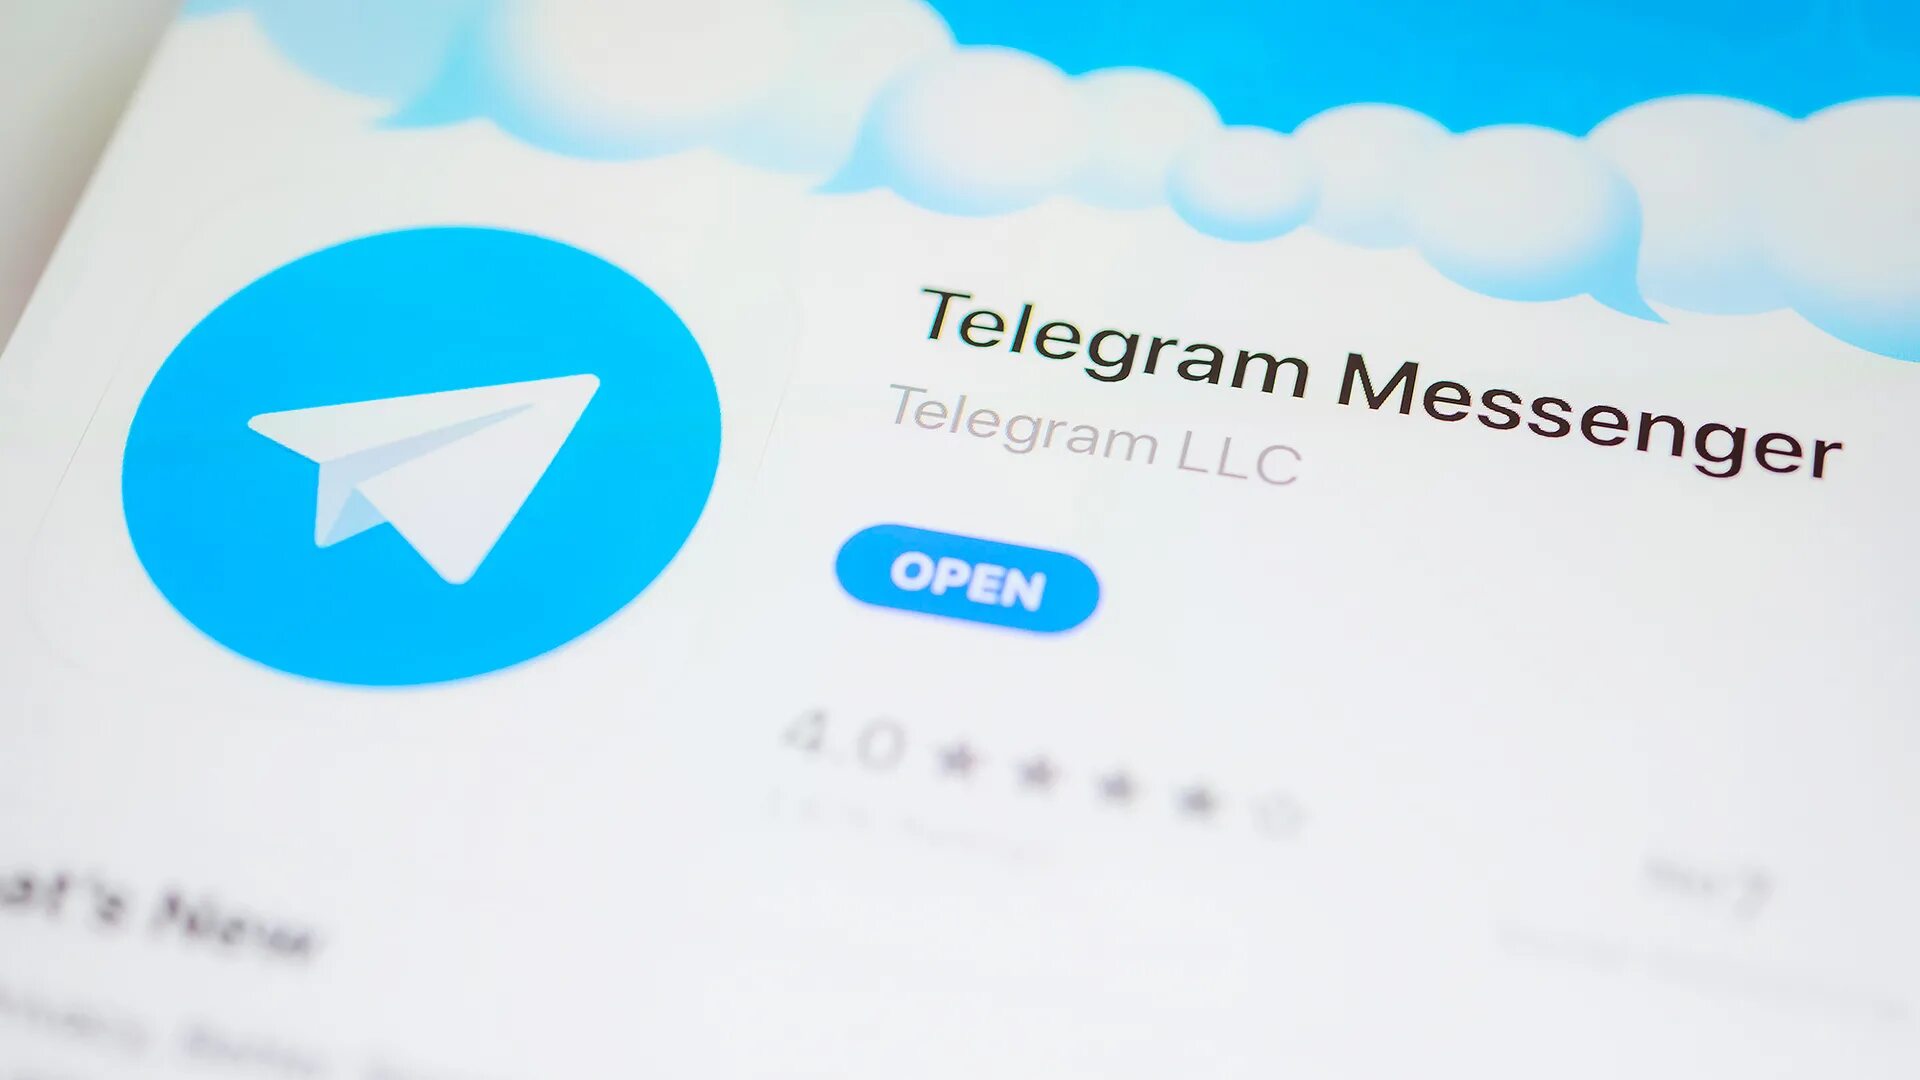 C telegram. Телеграмм. Телеграм разблокировали. Telegram Messenger. Пользователь телеграм.